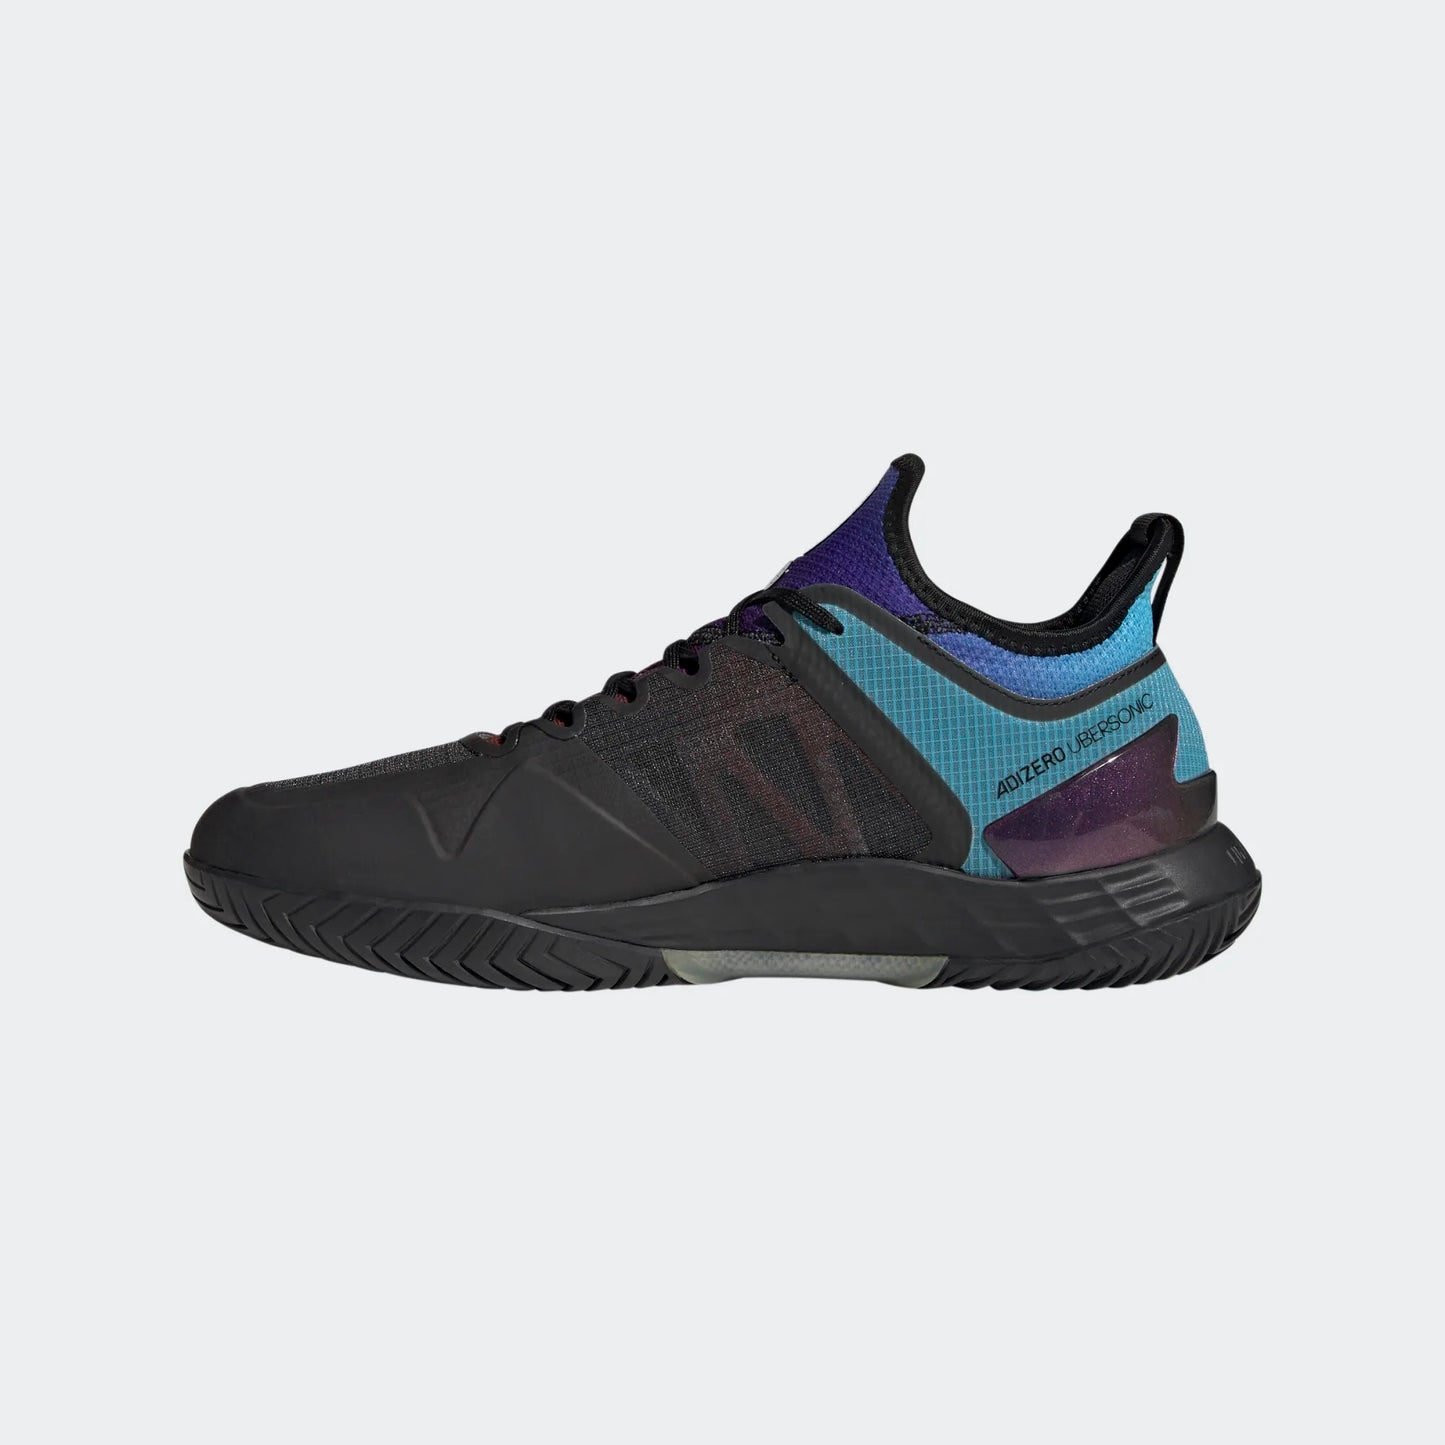 adidas Adizero Ubersonic 4 men tennis shoes - Grey/Blue/Black HQ8381